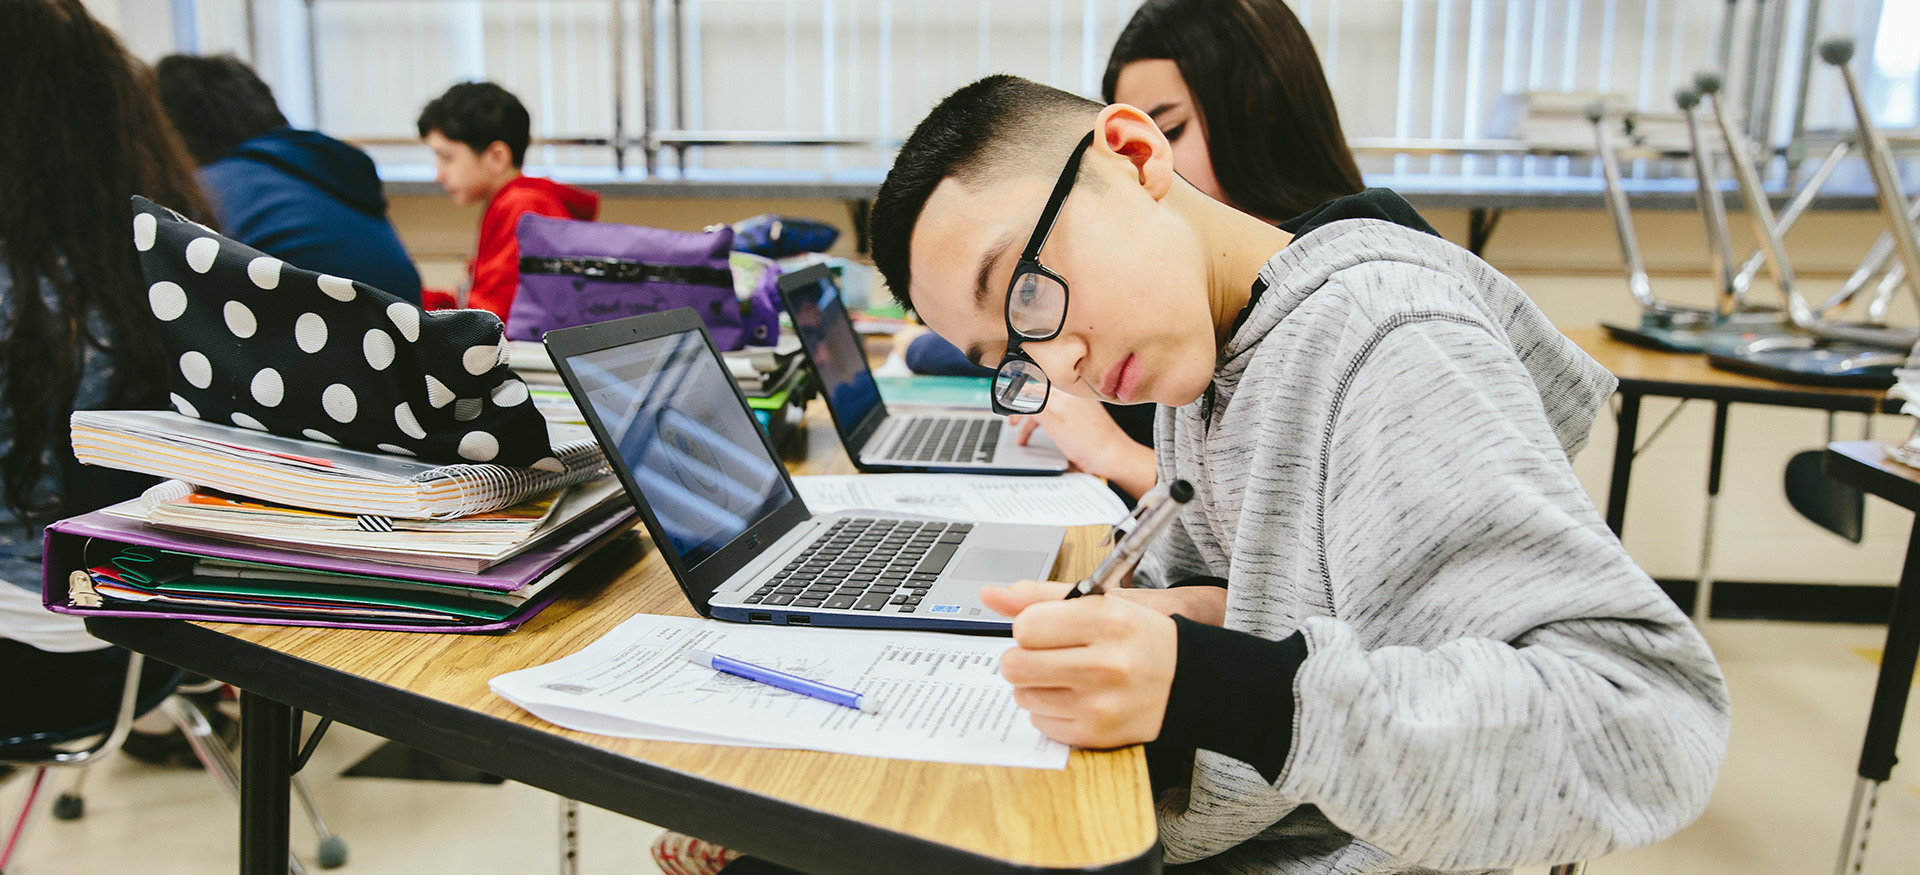 与笔记本电脑一起在书桌上独立工作的学生。一名学生在纸上写作。